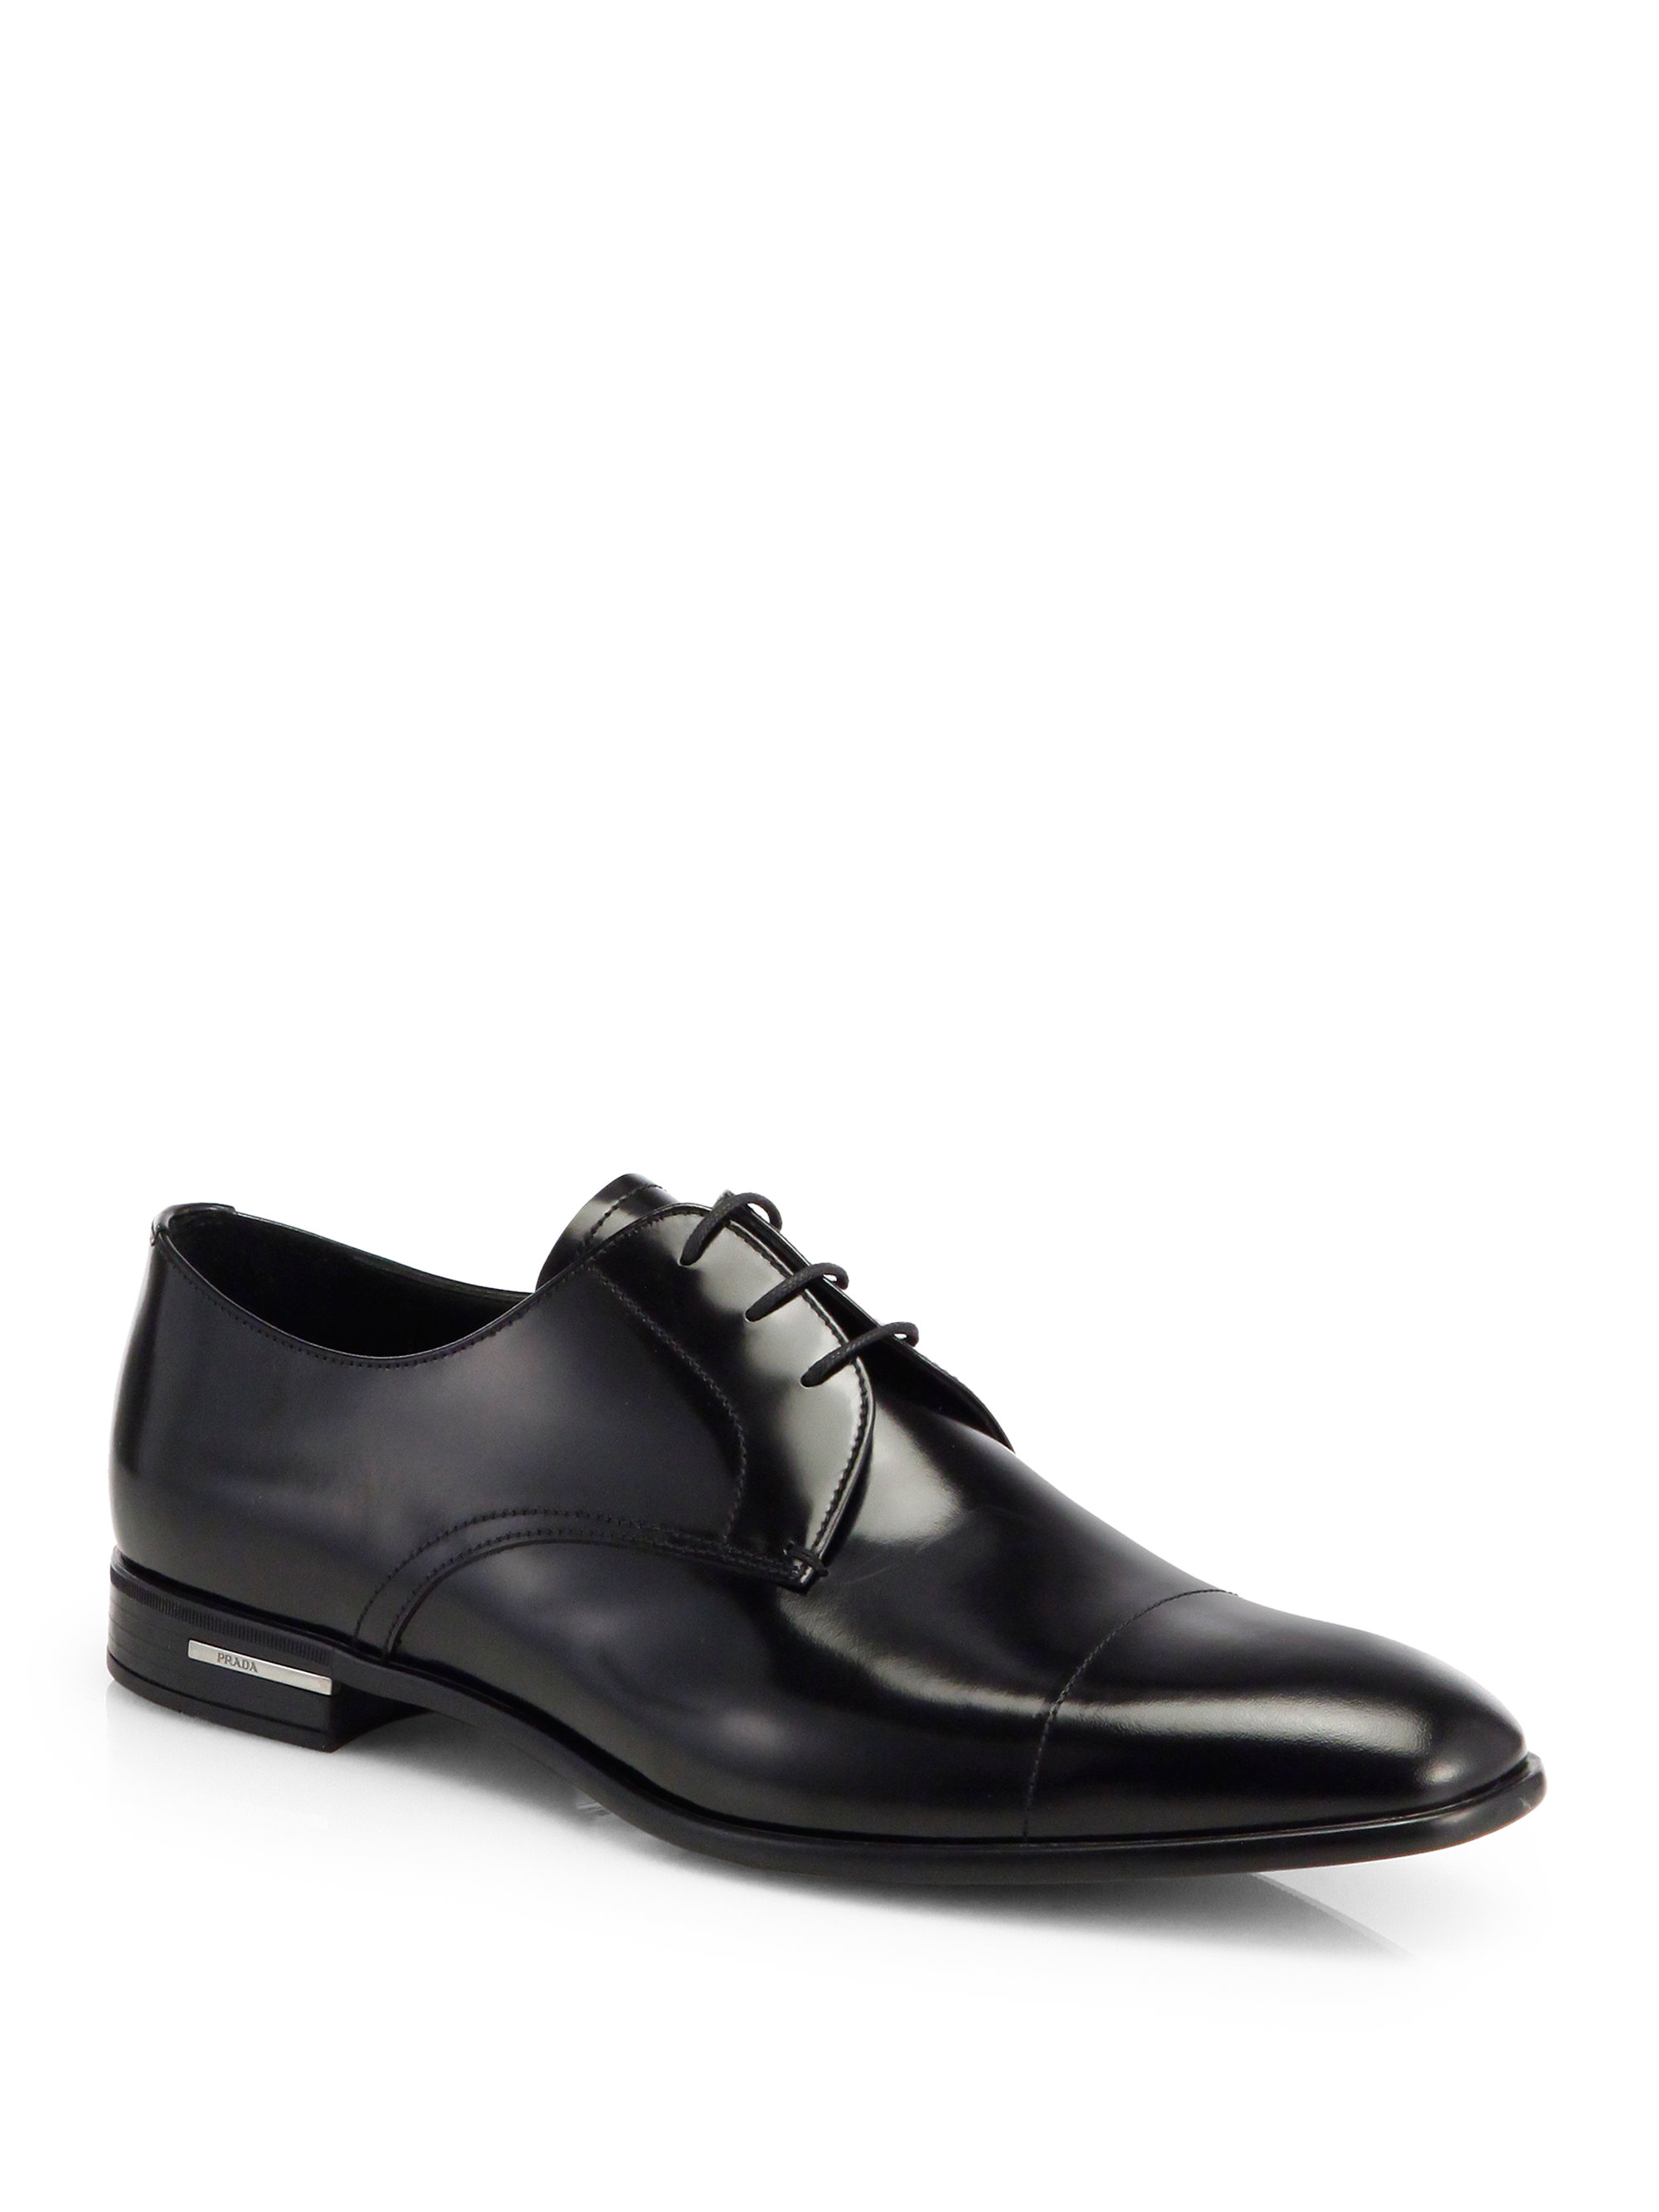 Prada Shoes Black 46